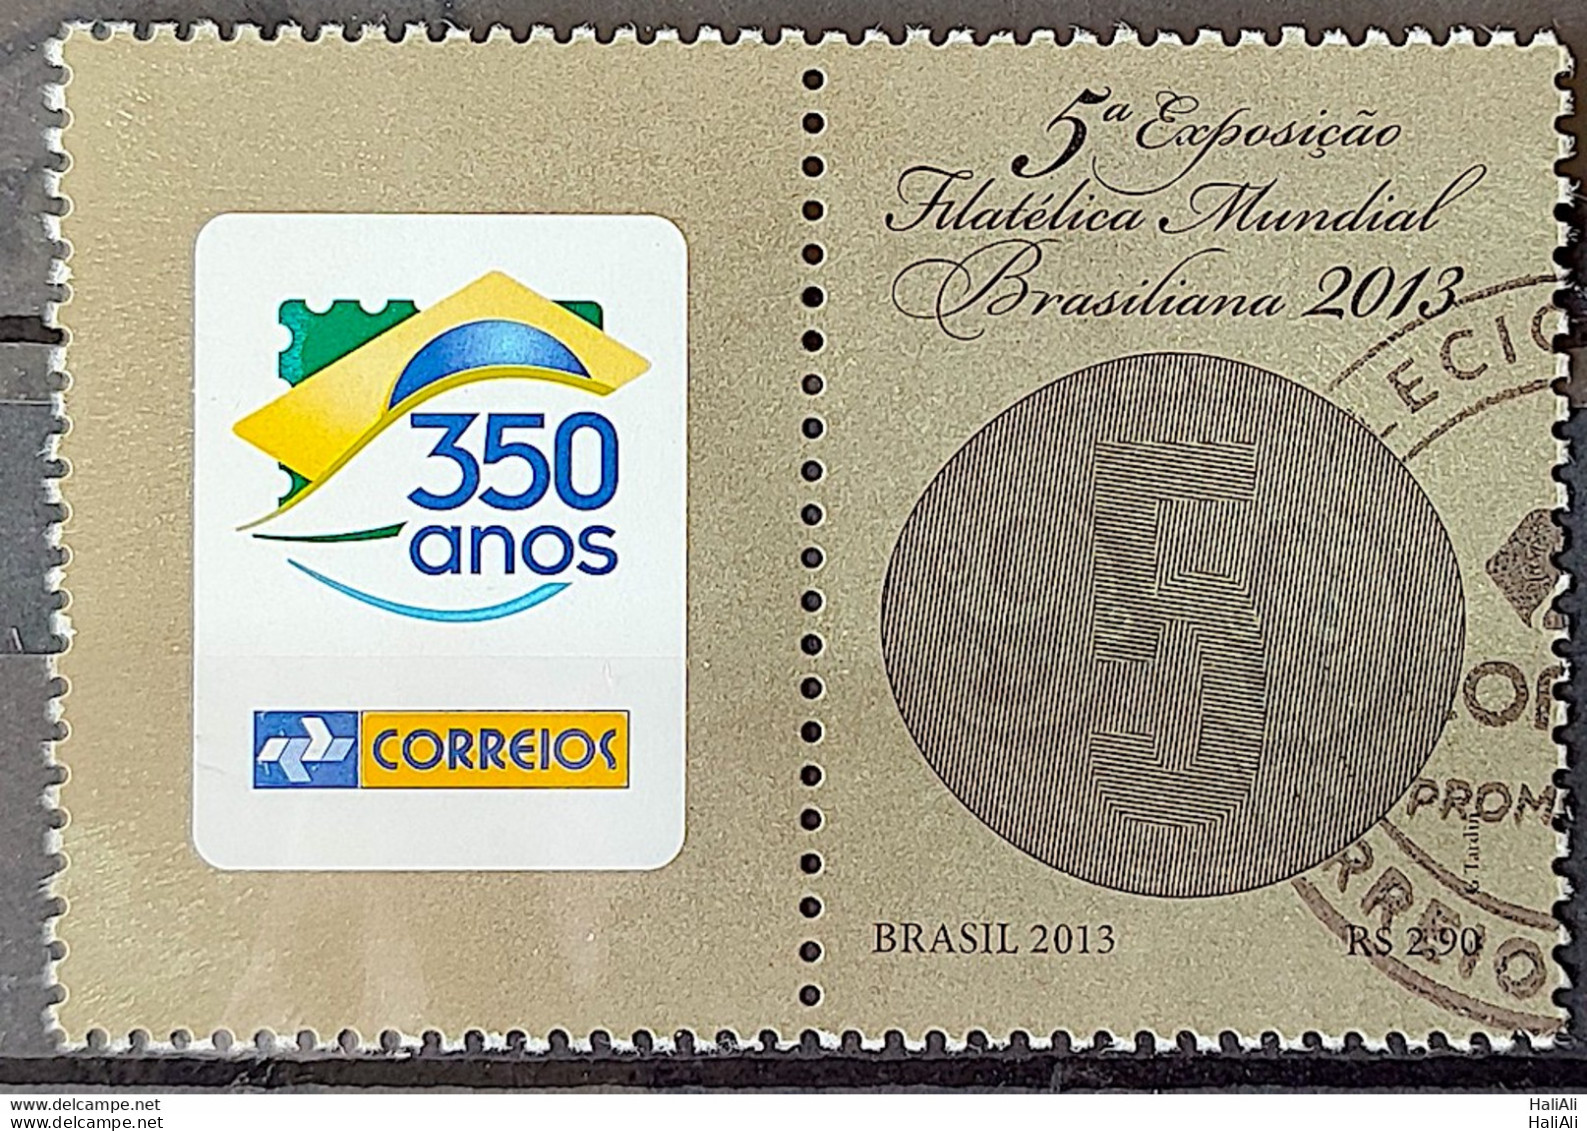 C 3291 Brazil Stamp Exposure Philatelic World Brasiliana Bull Eyes 2013 With Vignette Circulated 1 - Usati